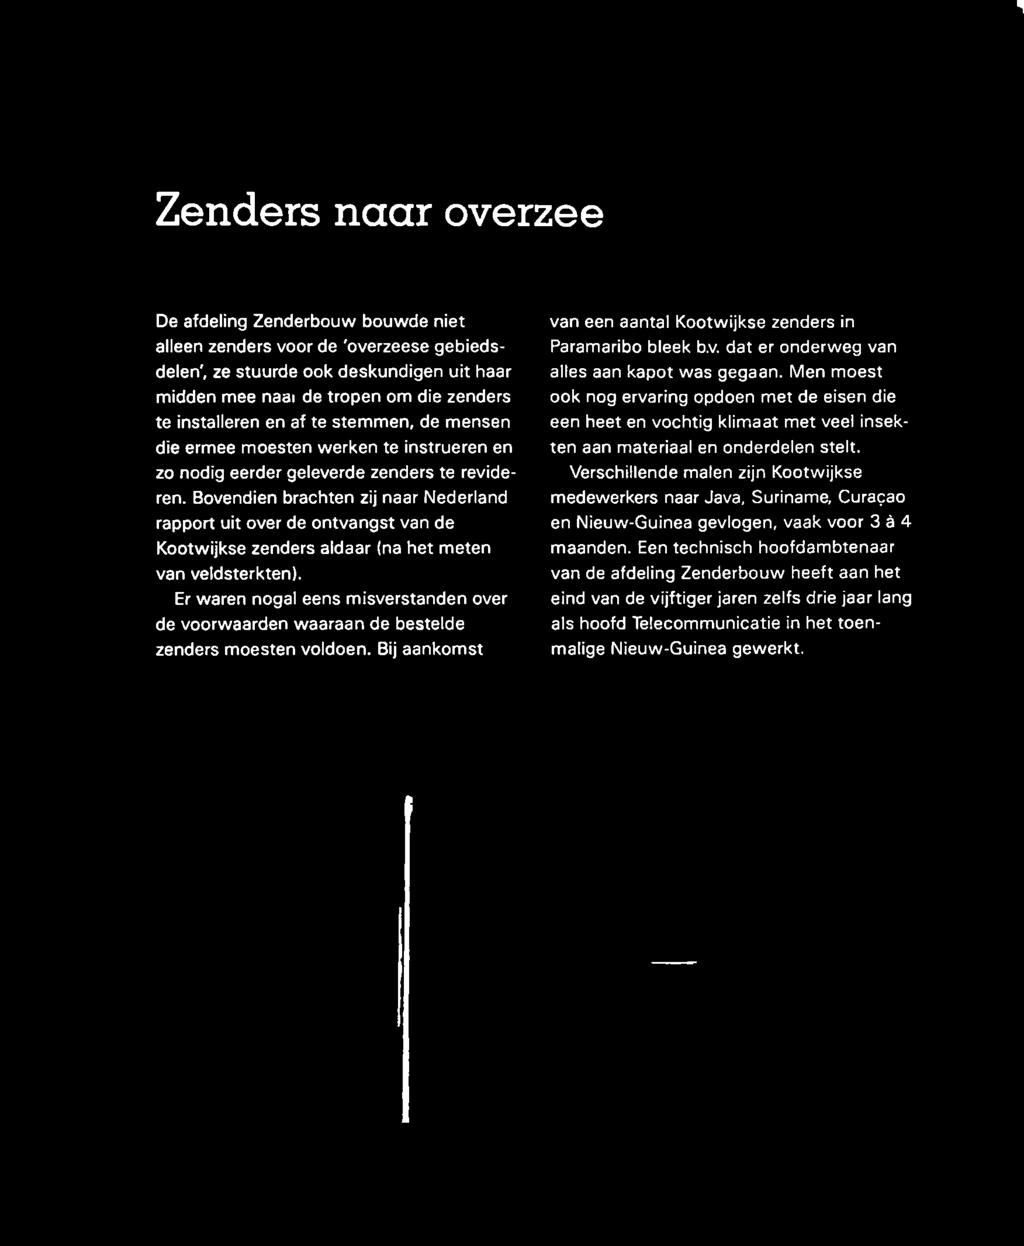 Bovendien brachten zij naar Nederland rapport uit over de ontvangst van de Kootwijkse zenders aldaar (na het meten van veldsterkten).